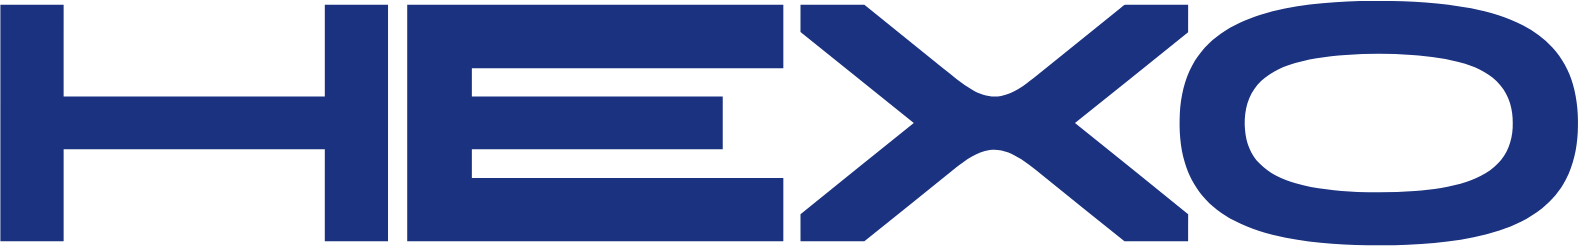 HEXO logo (PNG transparent)